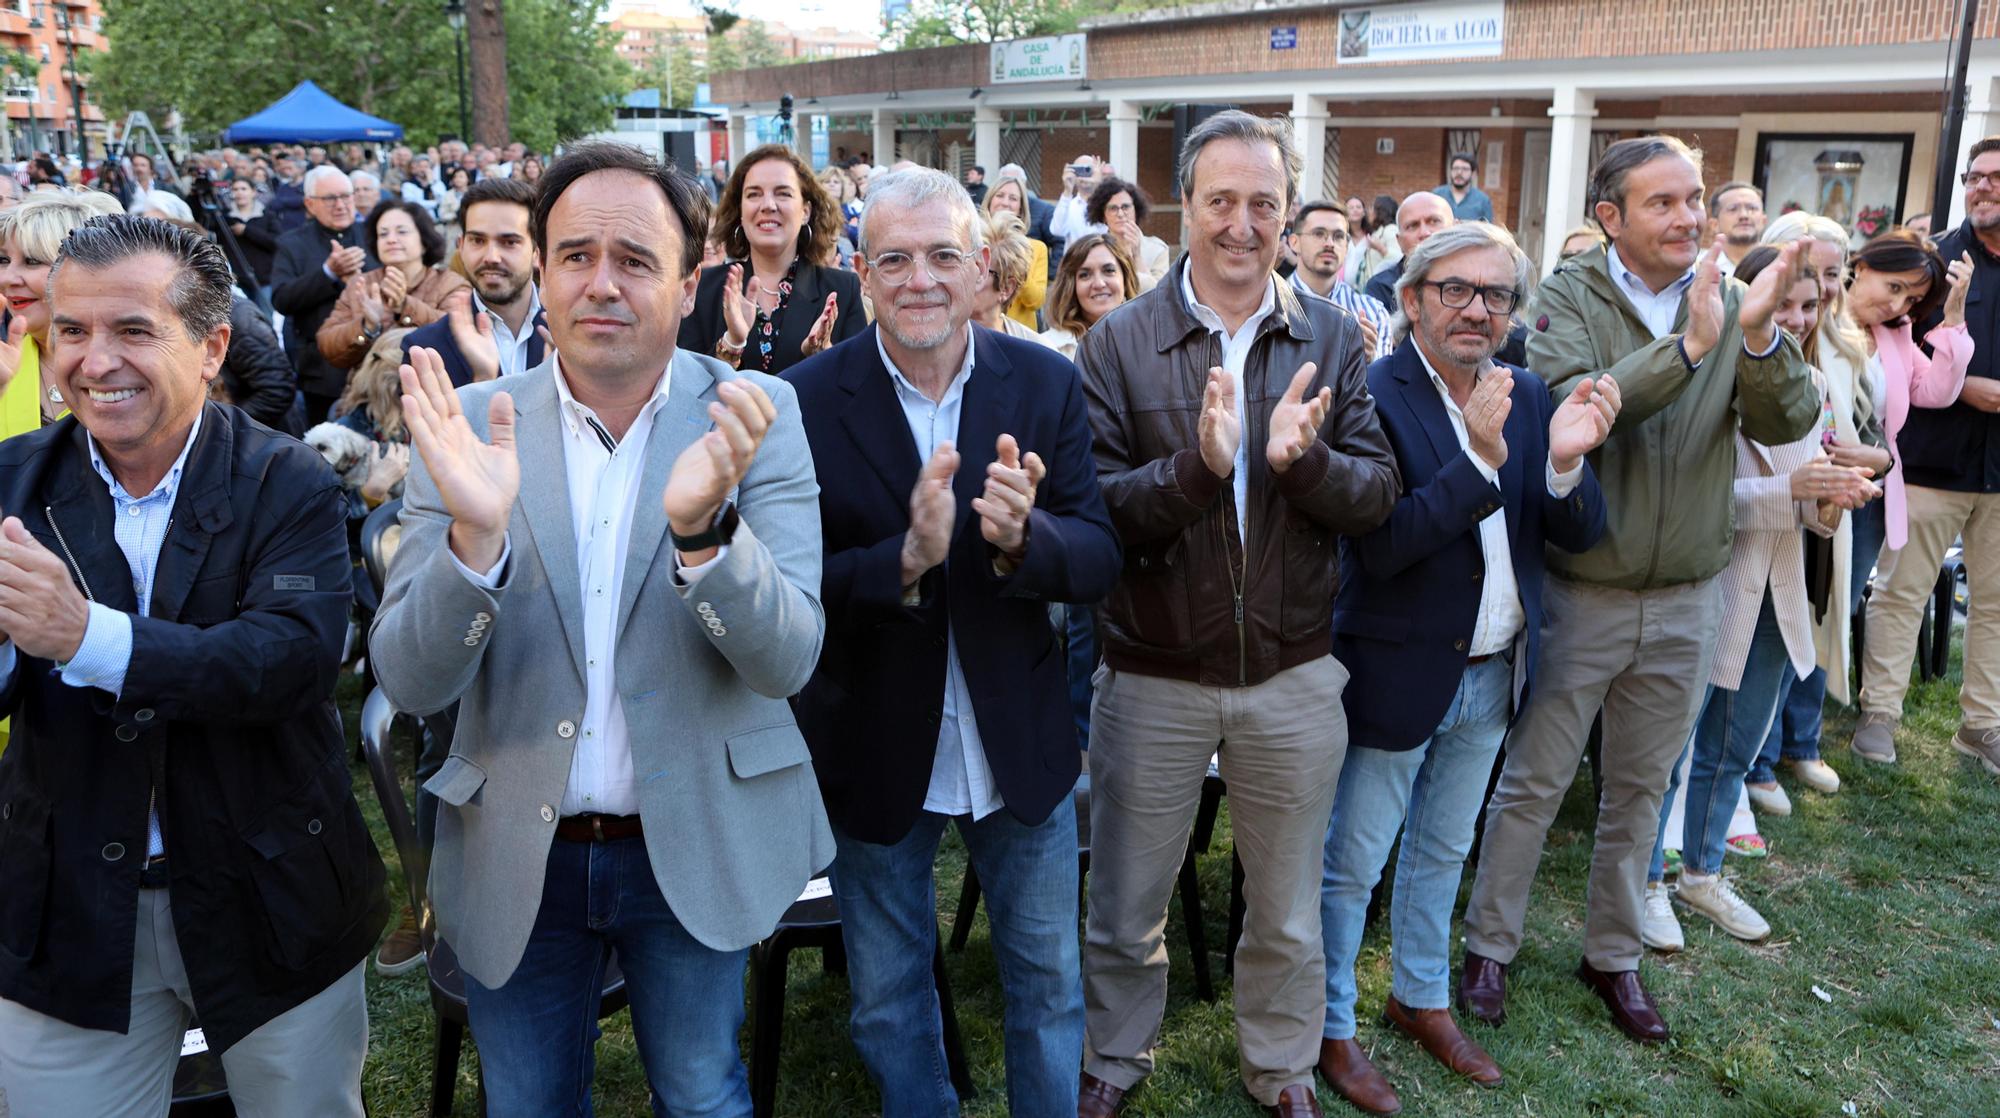 Mazón escenifica la reunificación del PP alcoyano para impulsar la candidatura de Carlos Pastor